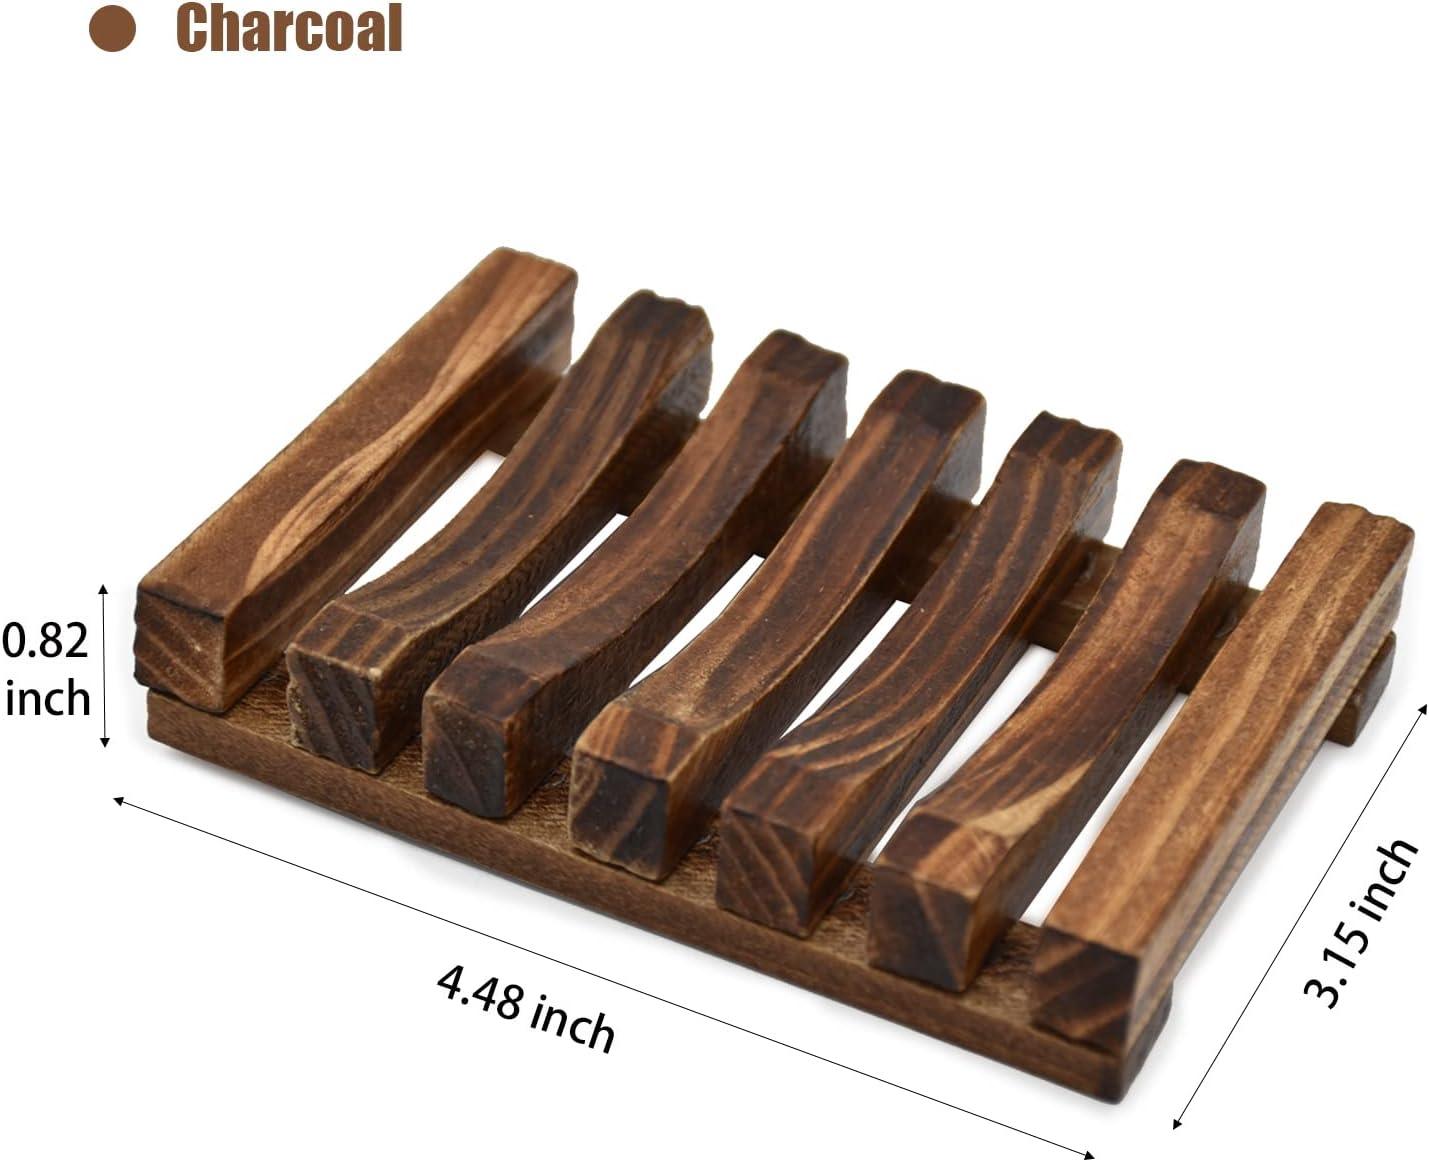 Soporte para jabonera, 3 piezas, protector de jabón de madera natural, estuche - VIRTUAL MUEBLES